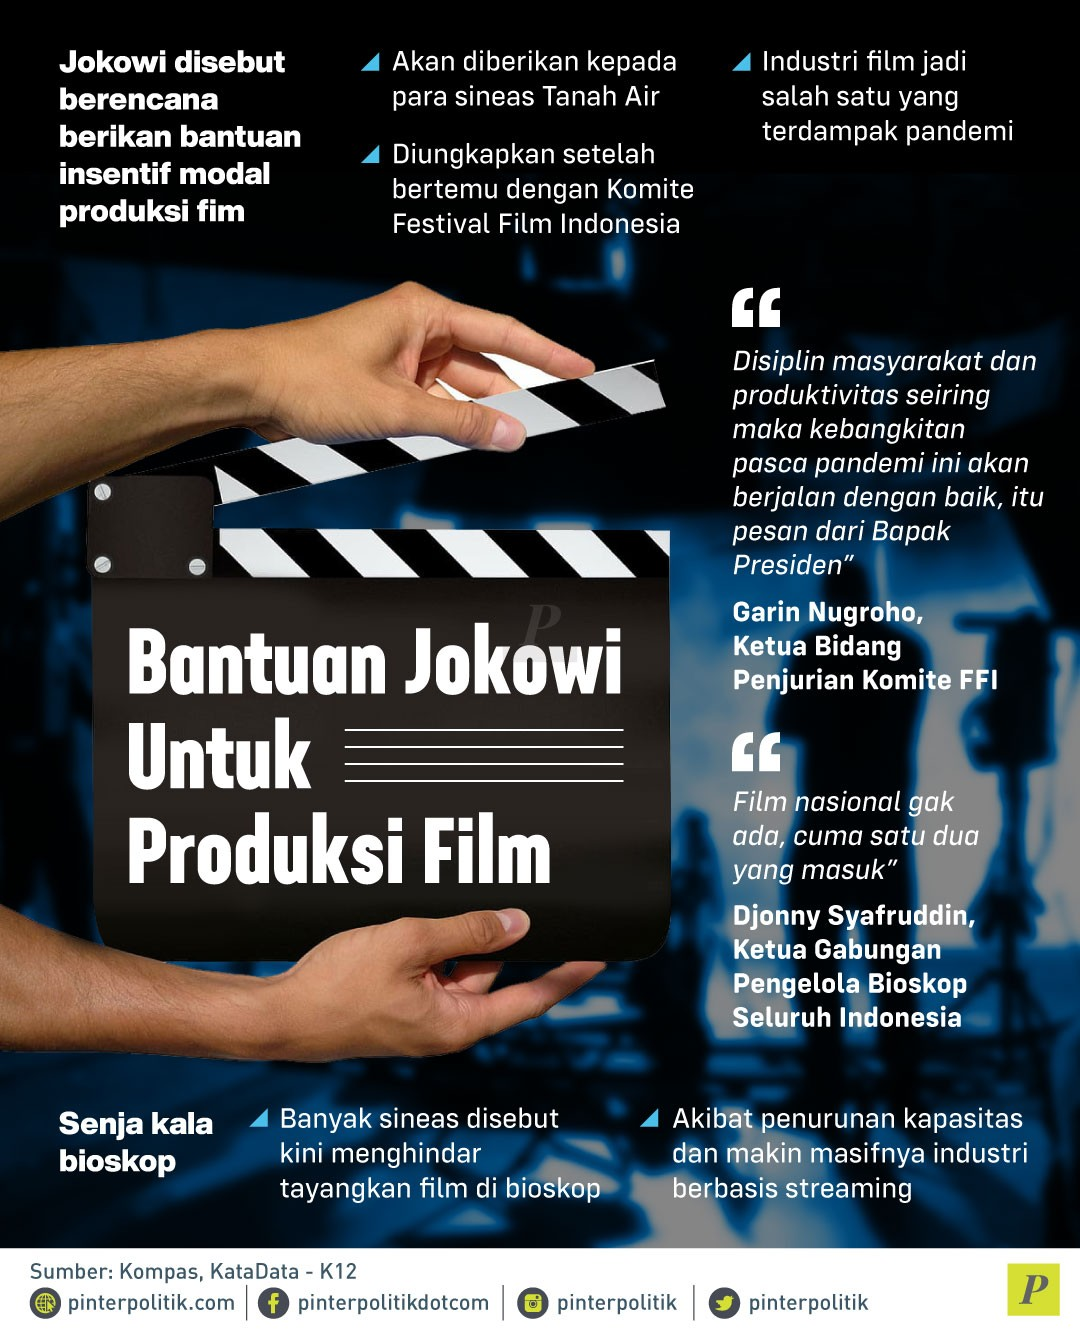 Bantuan Jokowi untuk Produksi Film